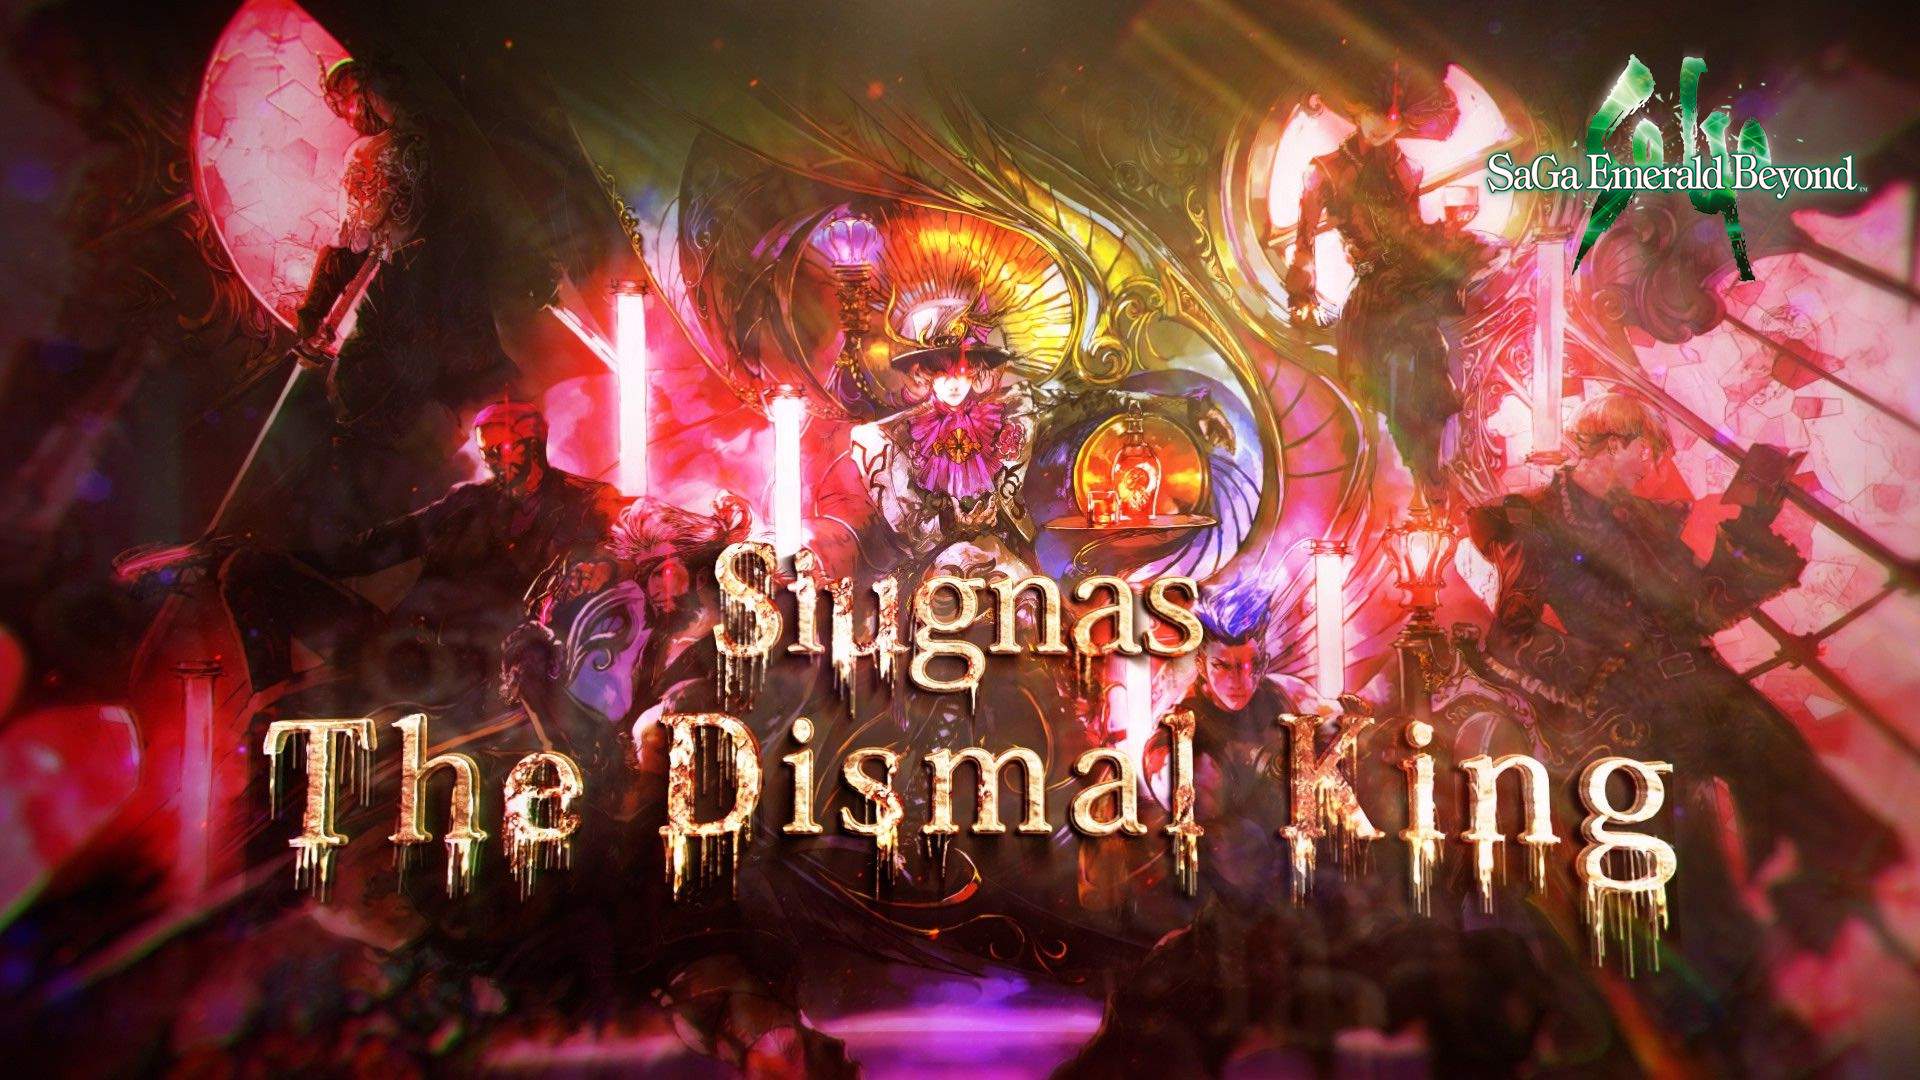 Une image de Siugnas accompagnÈe du texte Siugnas, le Dismal King.